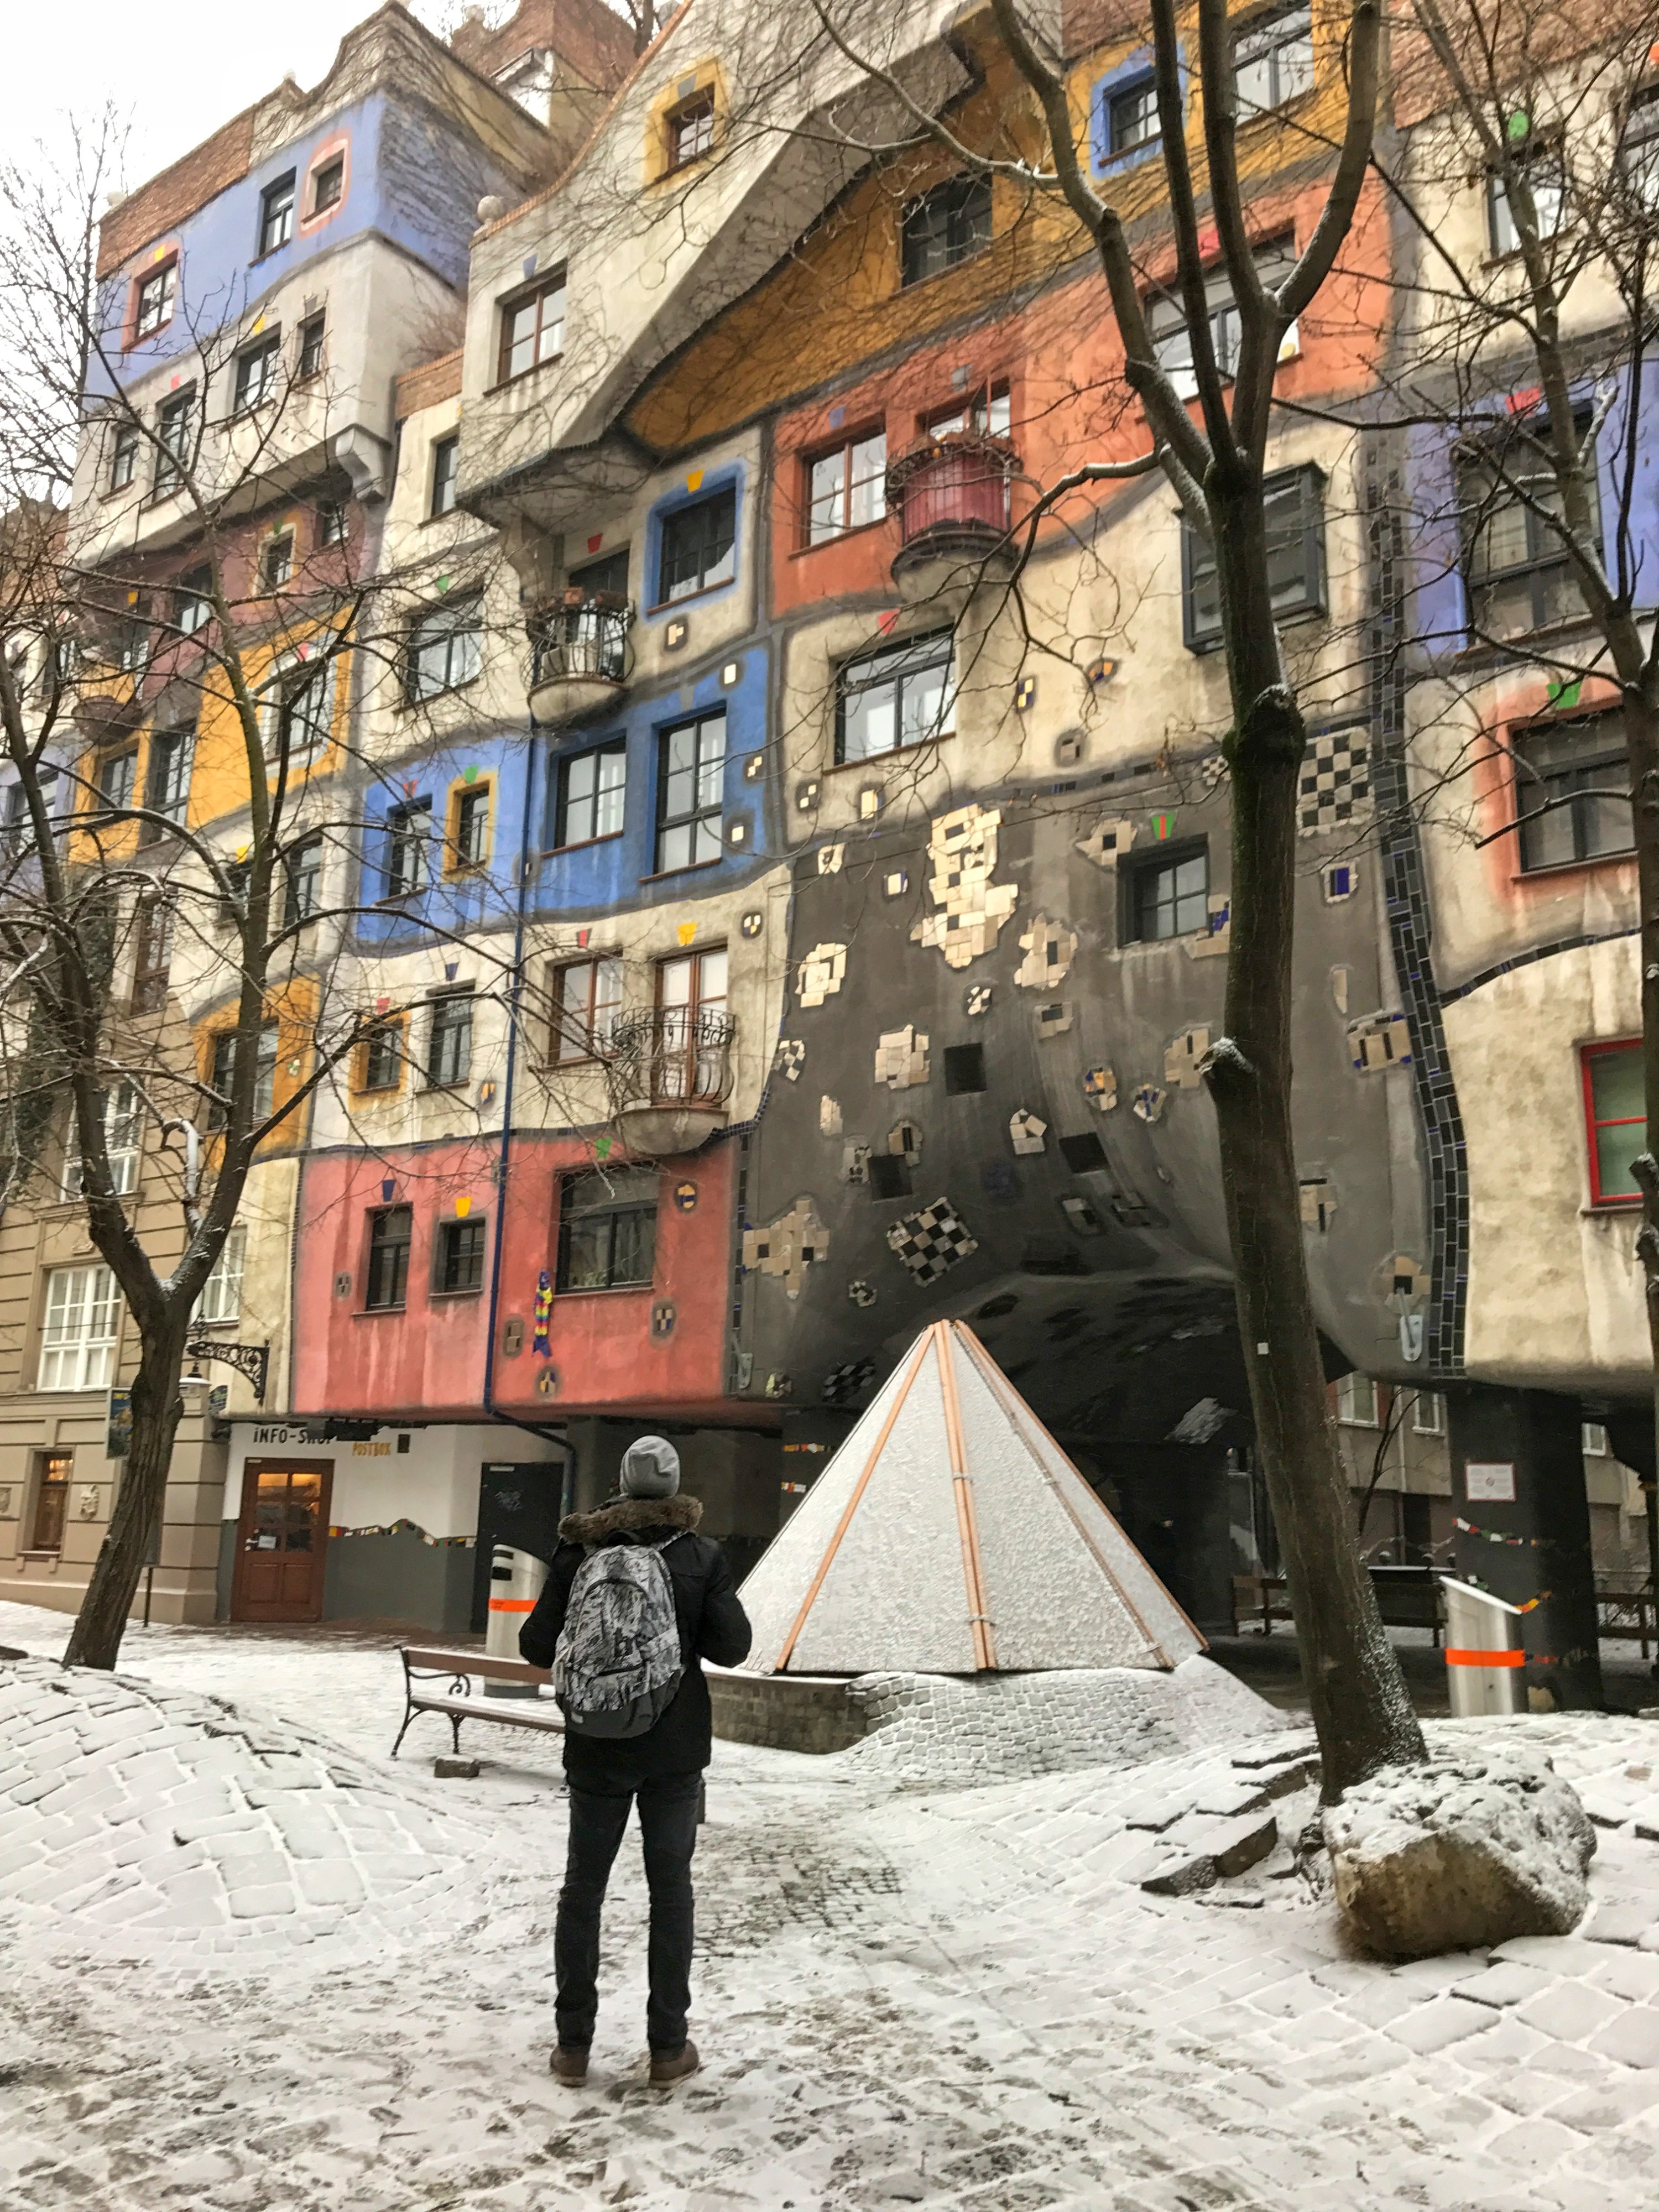 The Hundertwasser structure, in Vienna, Austria. (Photo by Özge Şengelen)